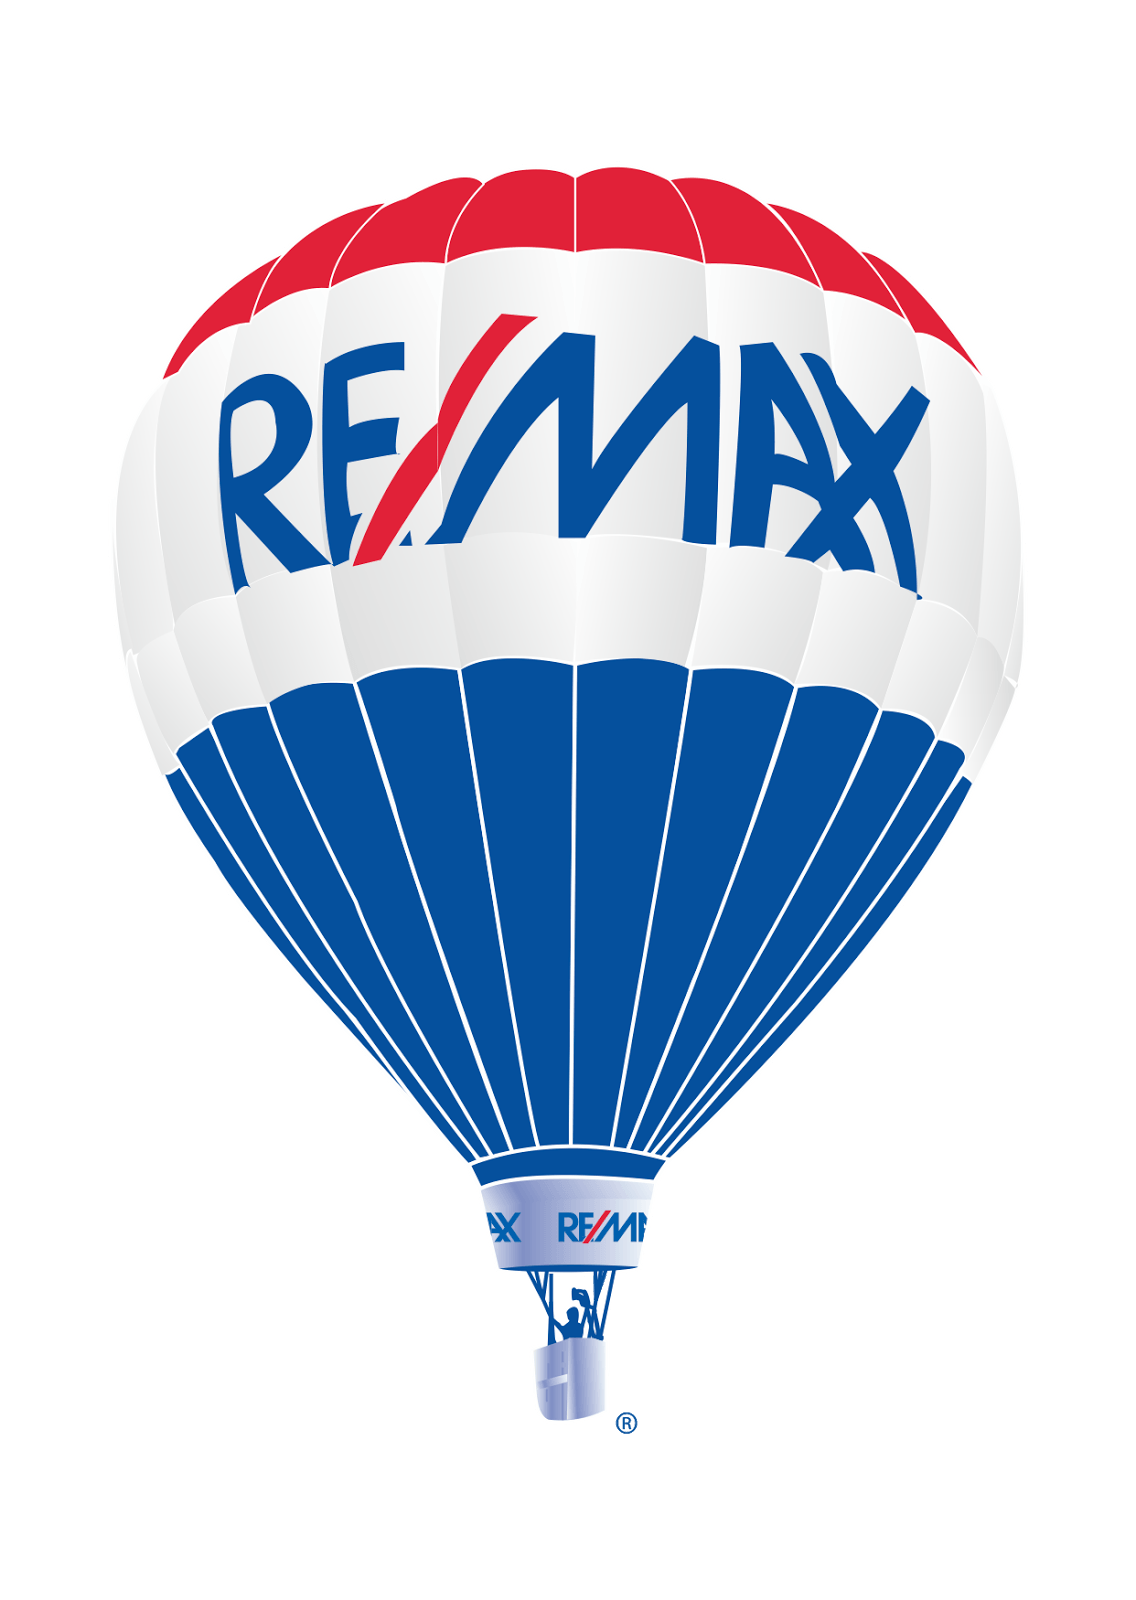 RE/MAX Logo - Bal O Remax Logo Vector | Vector logo download in 2019 | Real Estate ...